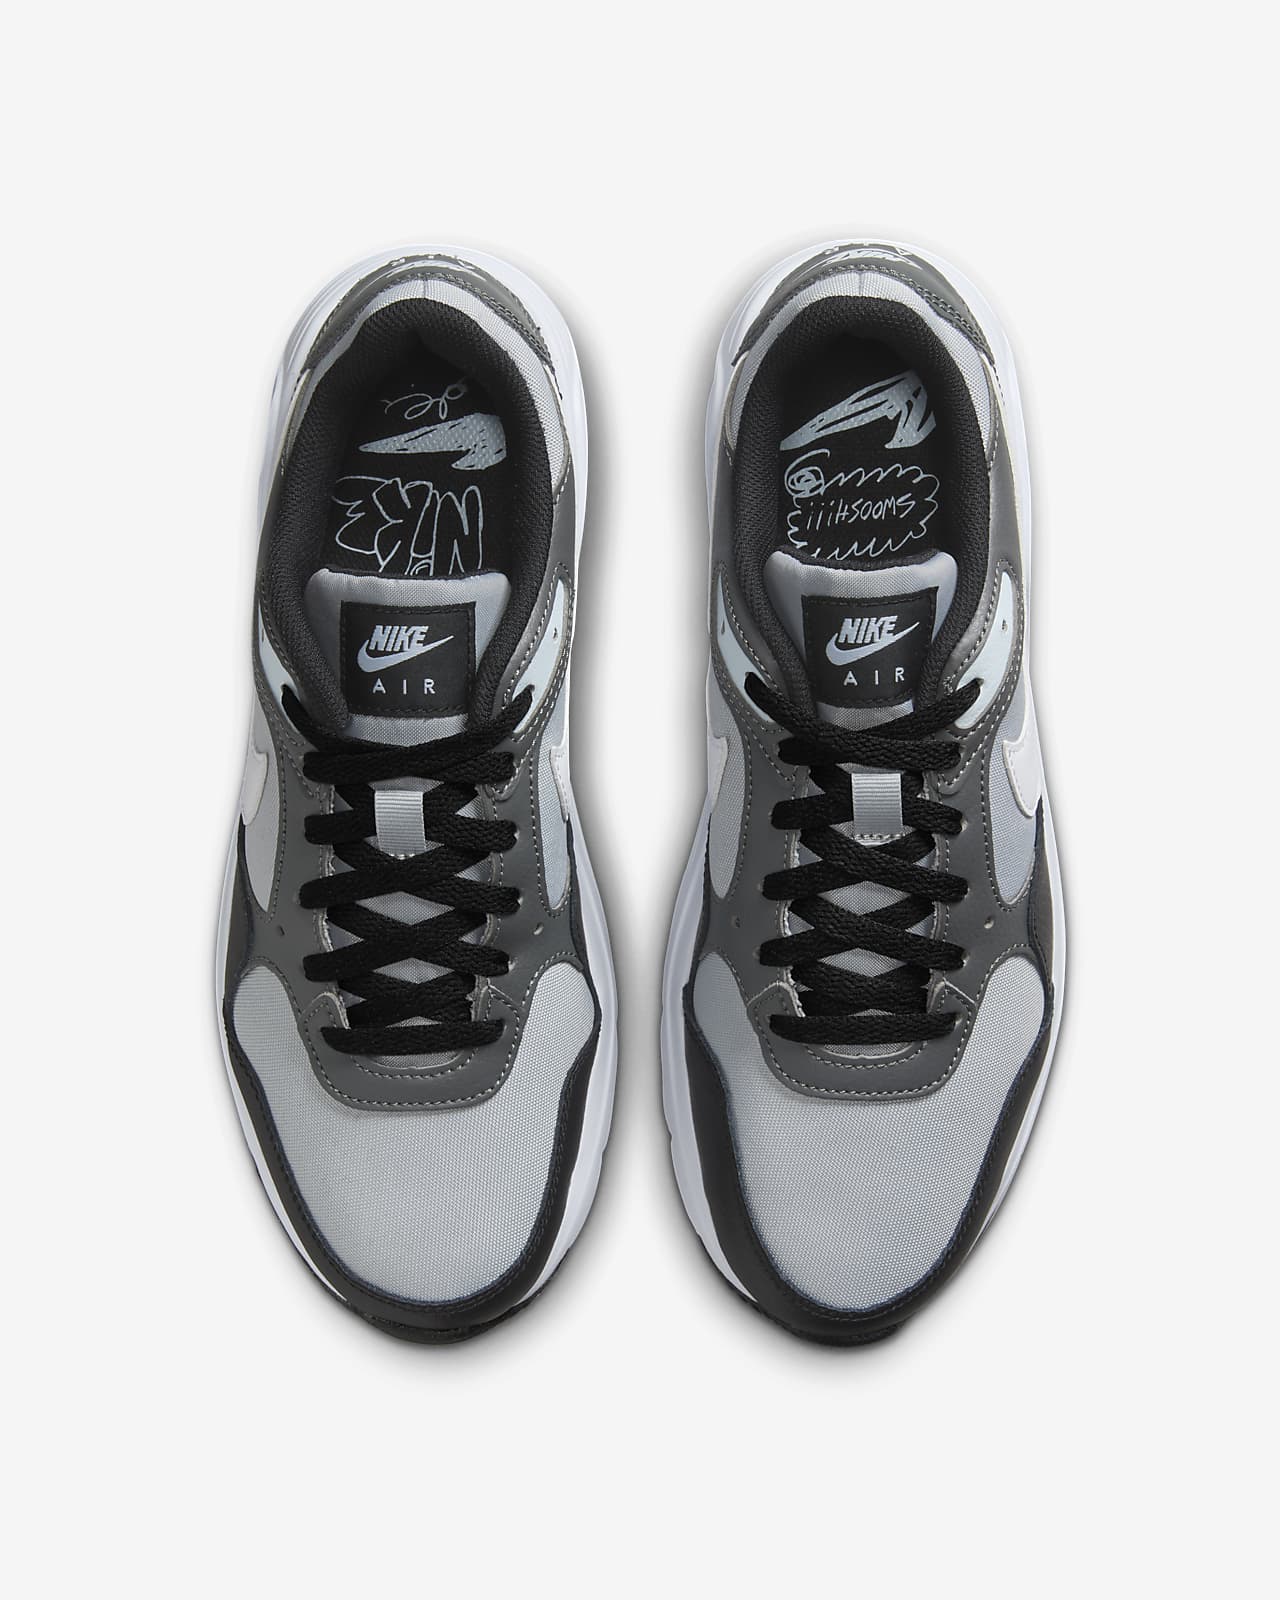 Nike Air SC Men\'s Shoes. Max